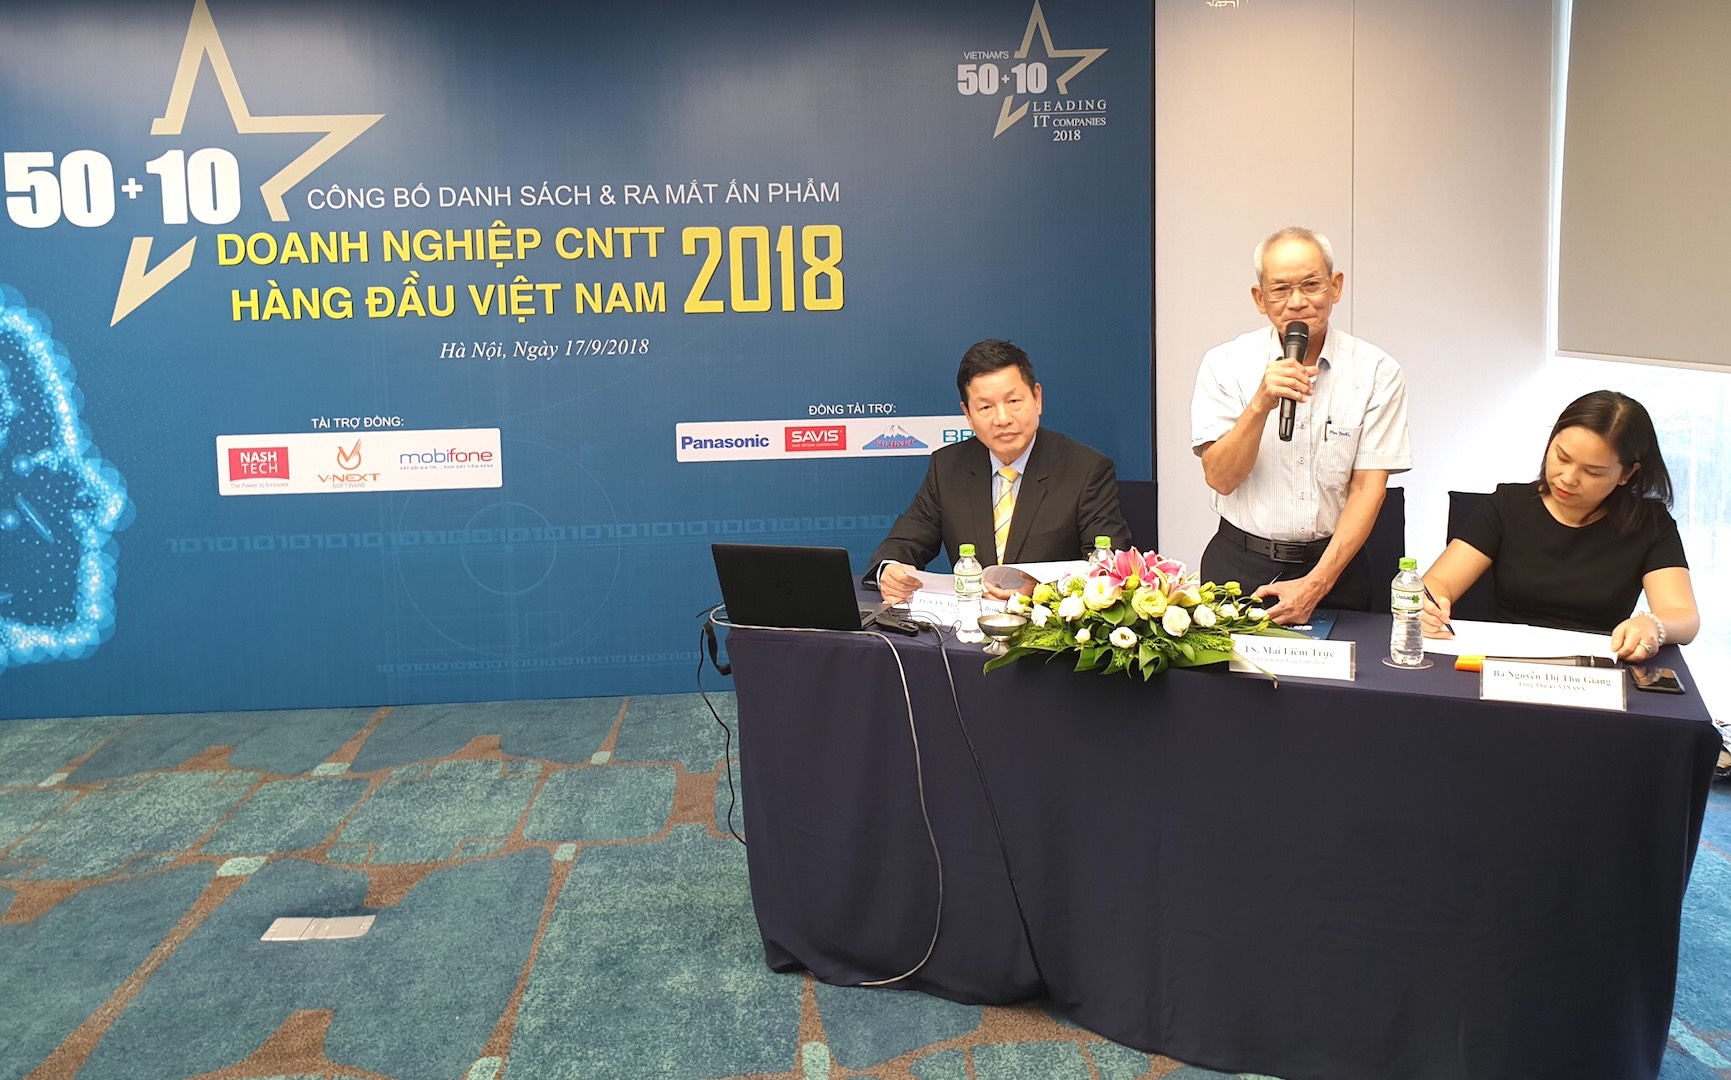 Lễ công bố danh sách 50 doanh nghiệp CNTT hàng đầu Việt Nam 2018. Ảnh: VGP/Hiền Minh